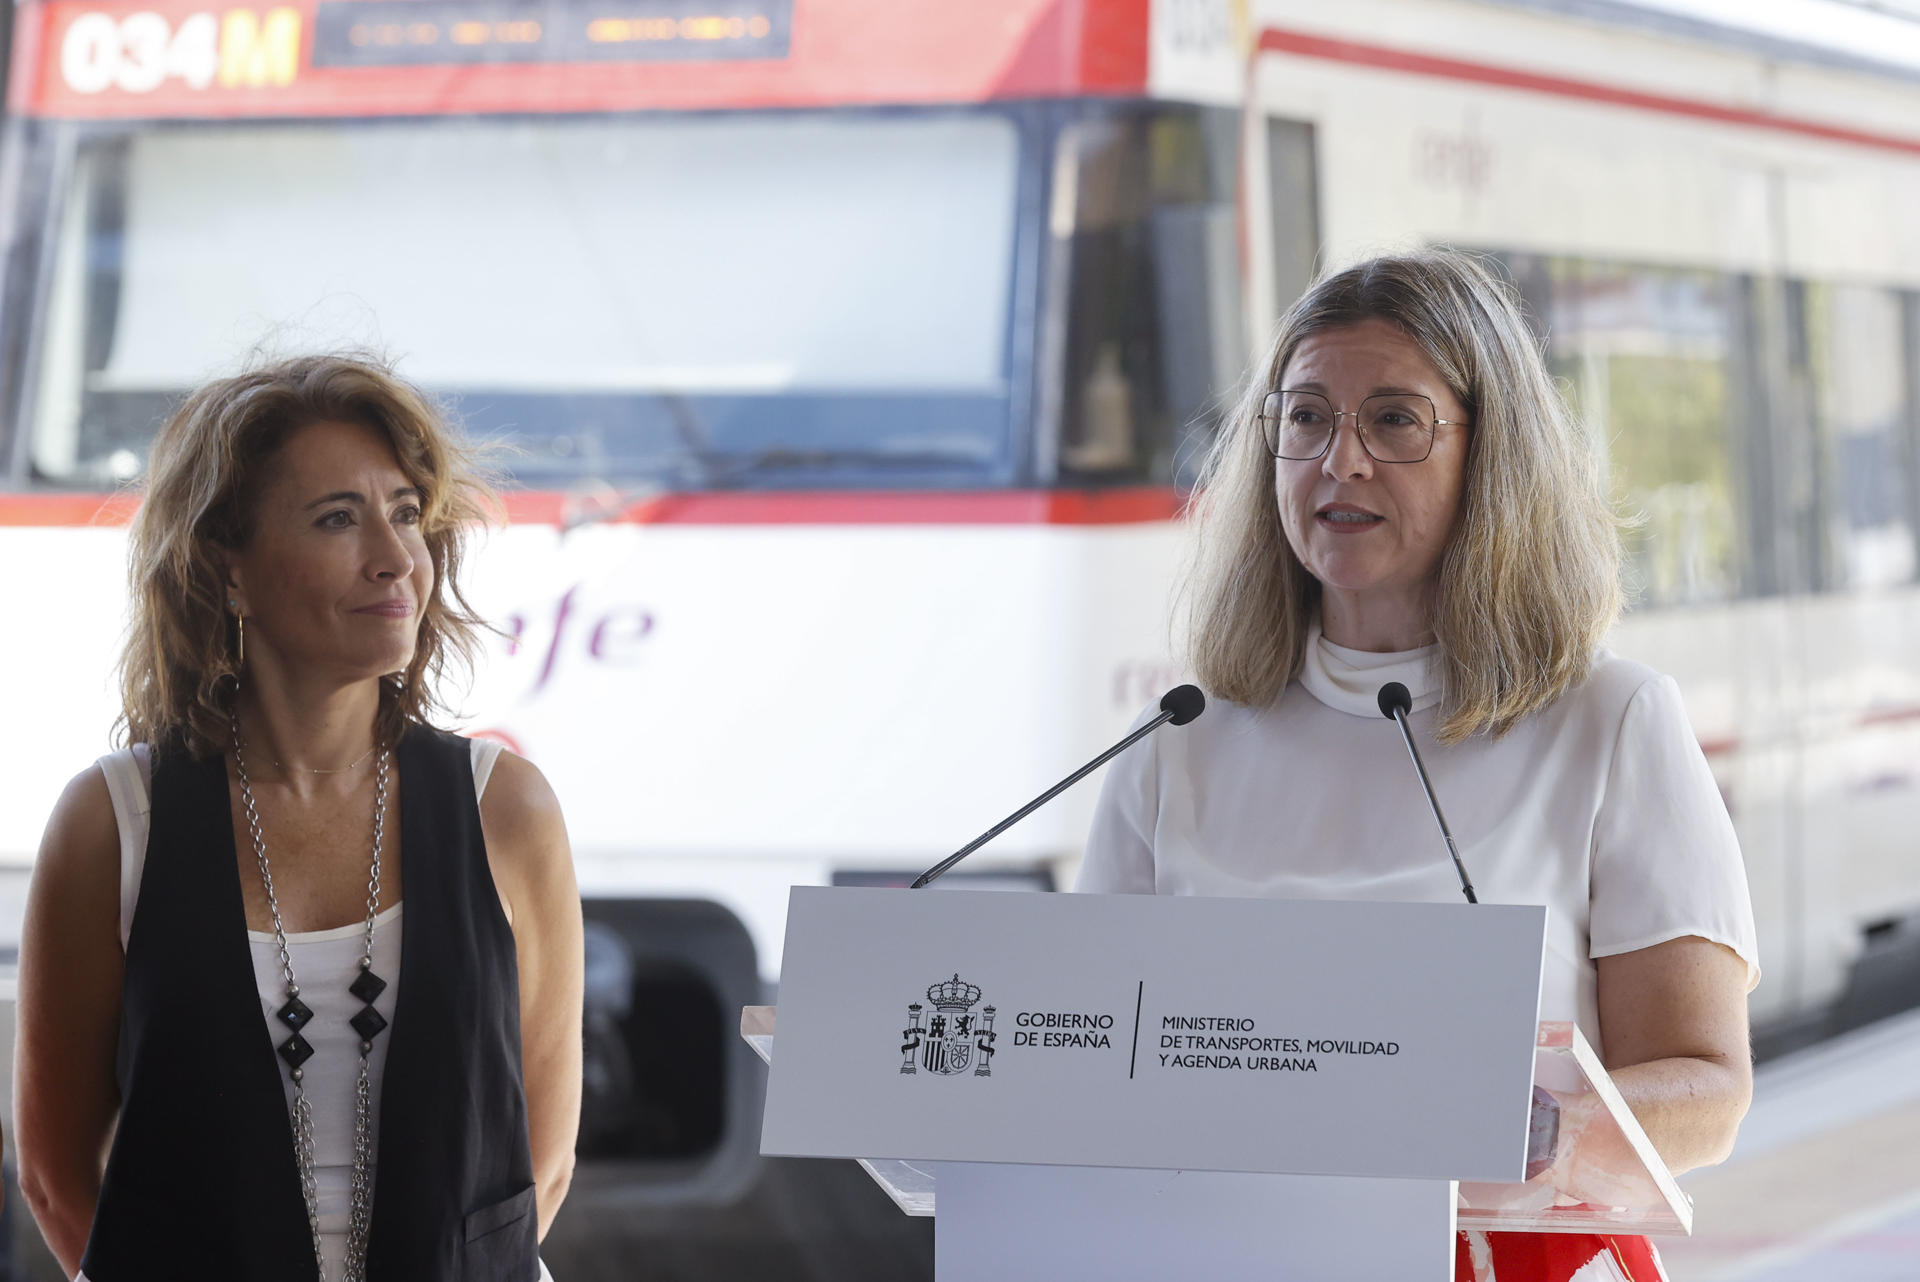 La presidenta de Adif, Marisa Domínguez (d), y la ministra de Transportes en funciones, Raquel Sánchez, durante su visita la estación ferroviaria de Xàtiva (Valencia) .-EFE/ Kai Forsterling
